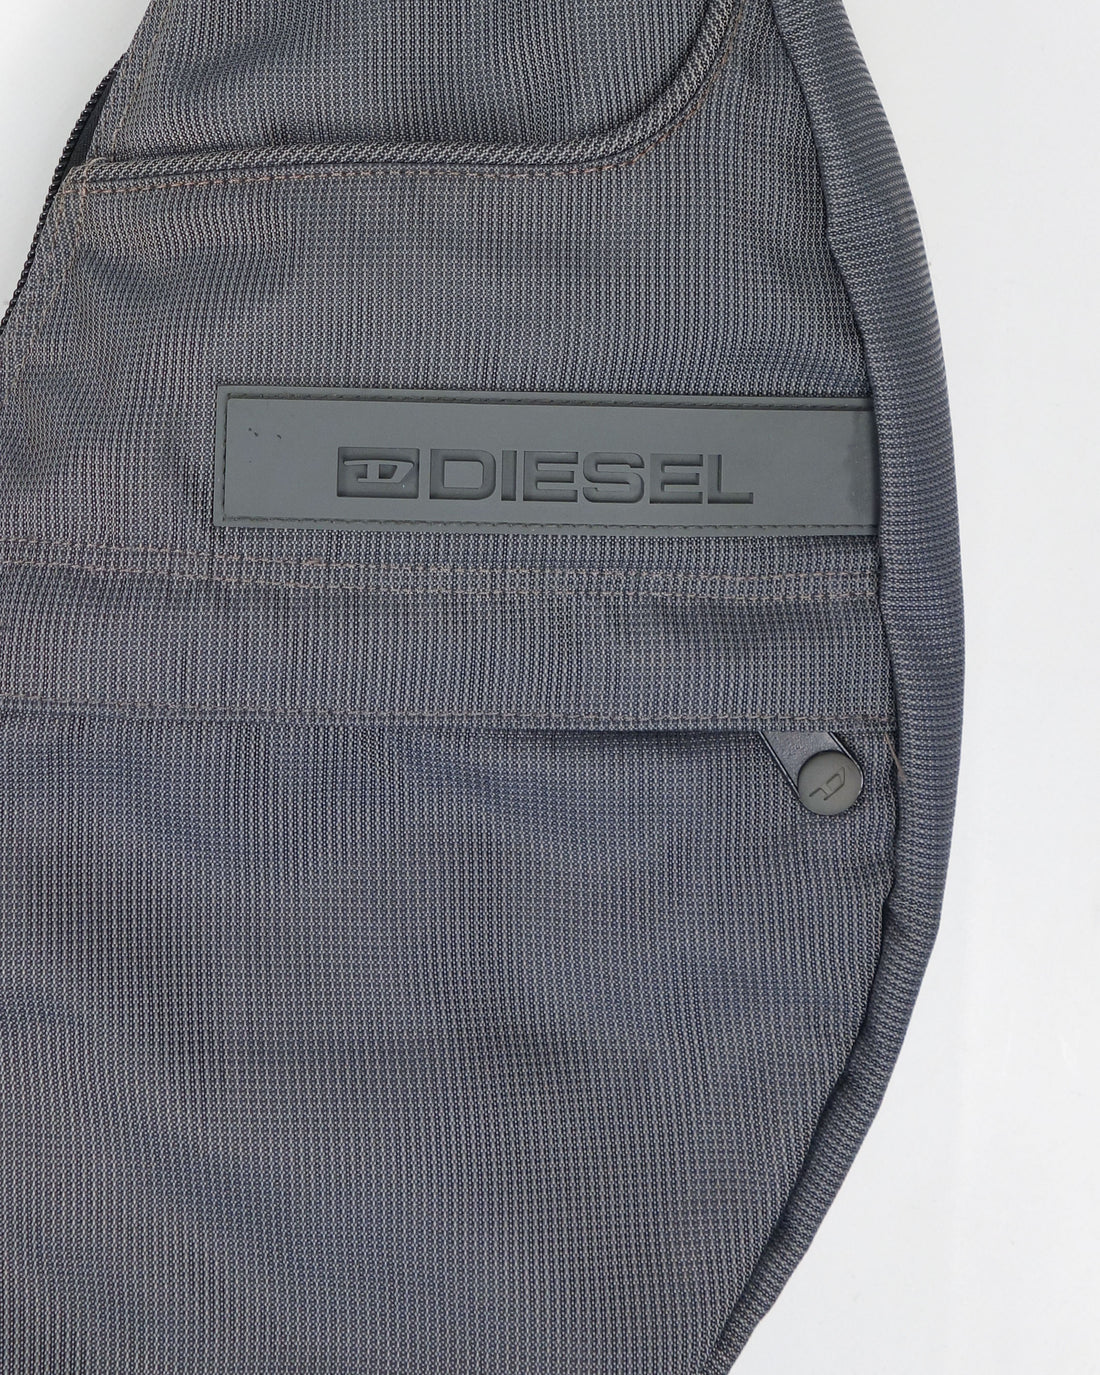 Diesel 3-D Logo Grey Sling Bag 2000's